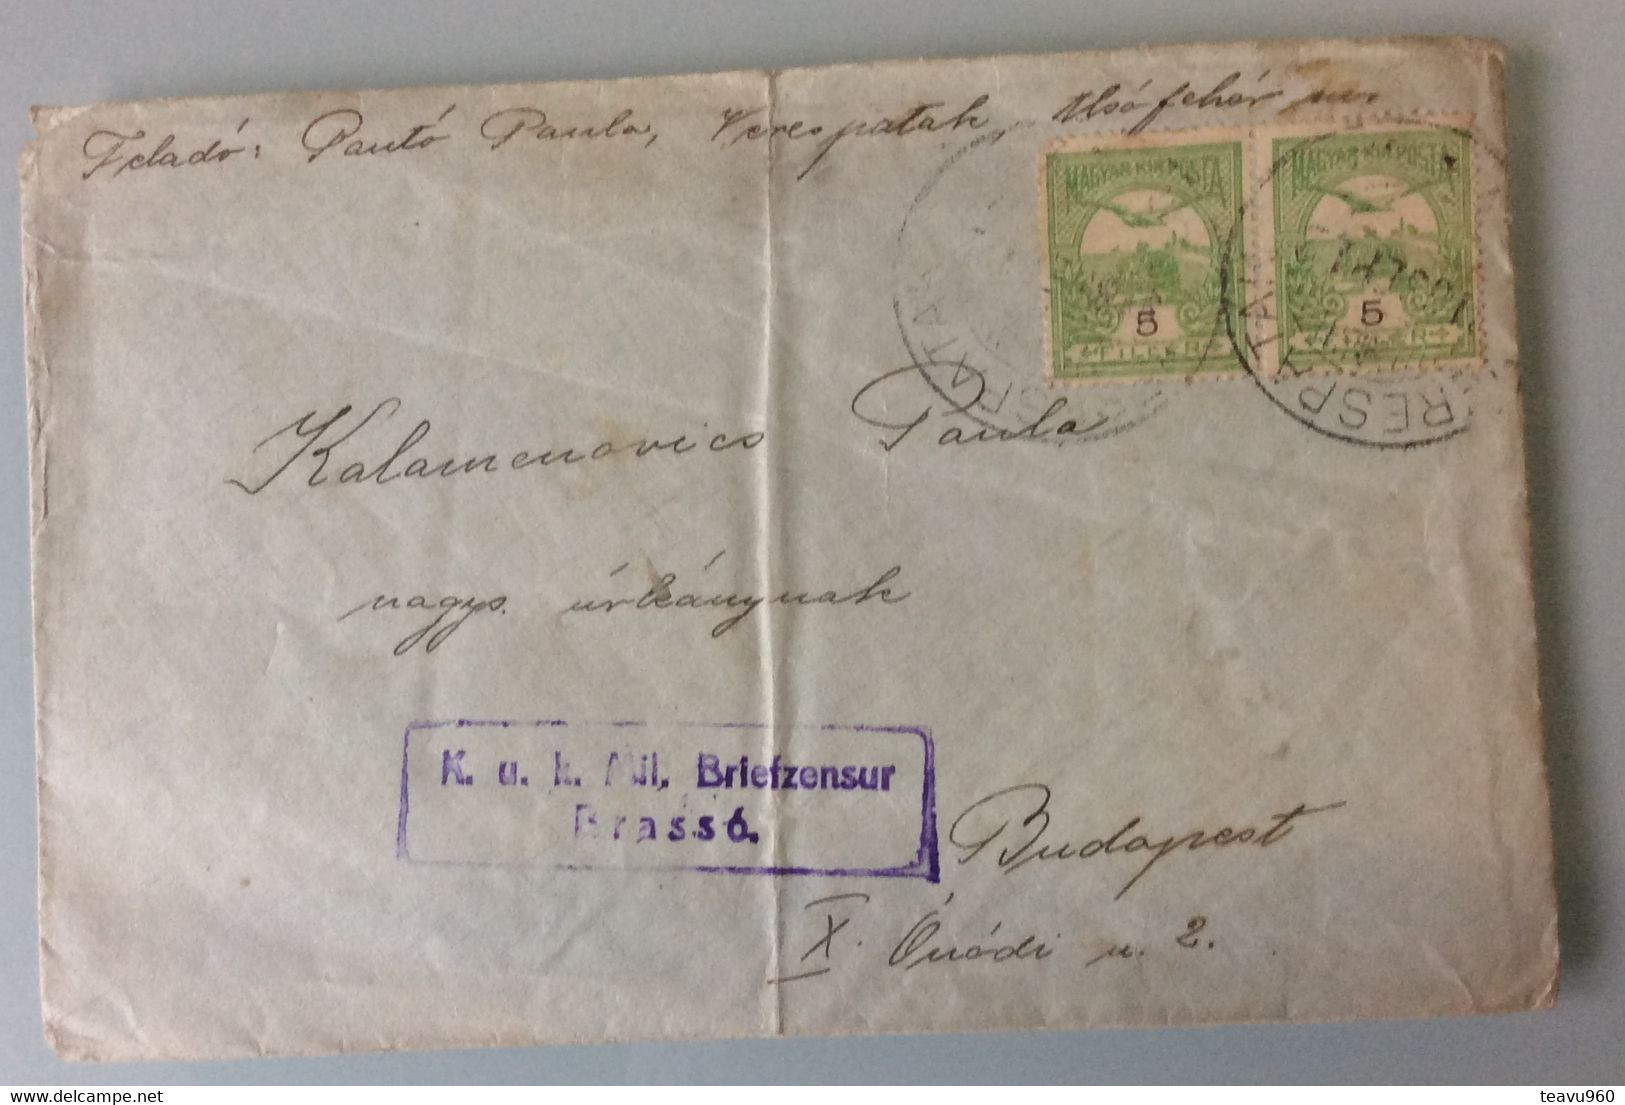 OLD POSTCARD Europe > Romania > 1881-1948 Kingdom > World War 1 Letters STAMP K.uk.Mil.BRIEFZENZUR  BRASSO 1916 - 1. Weltkrieg (Briefe)